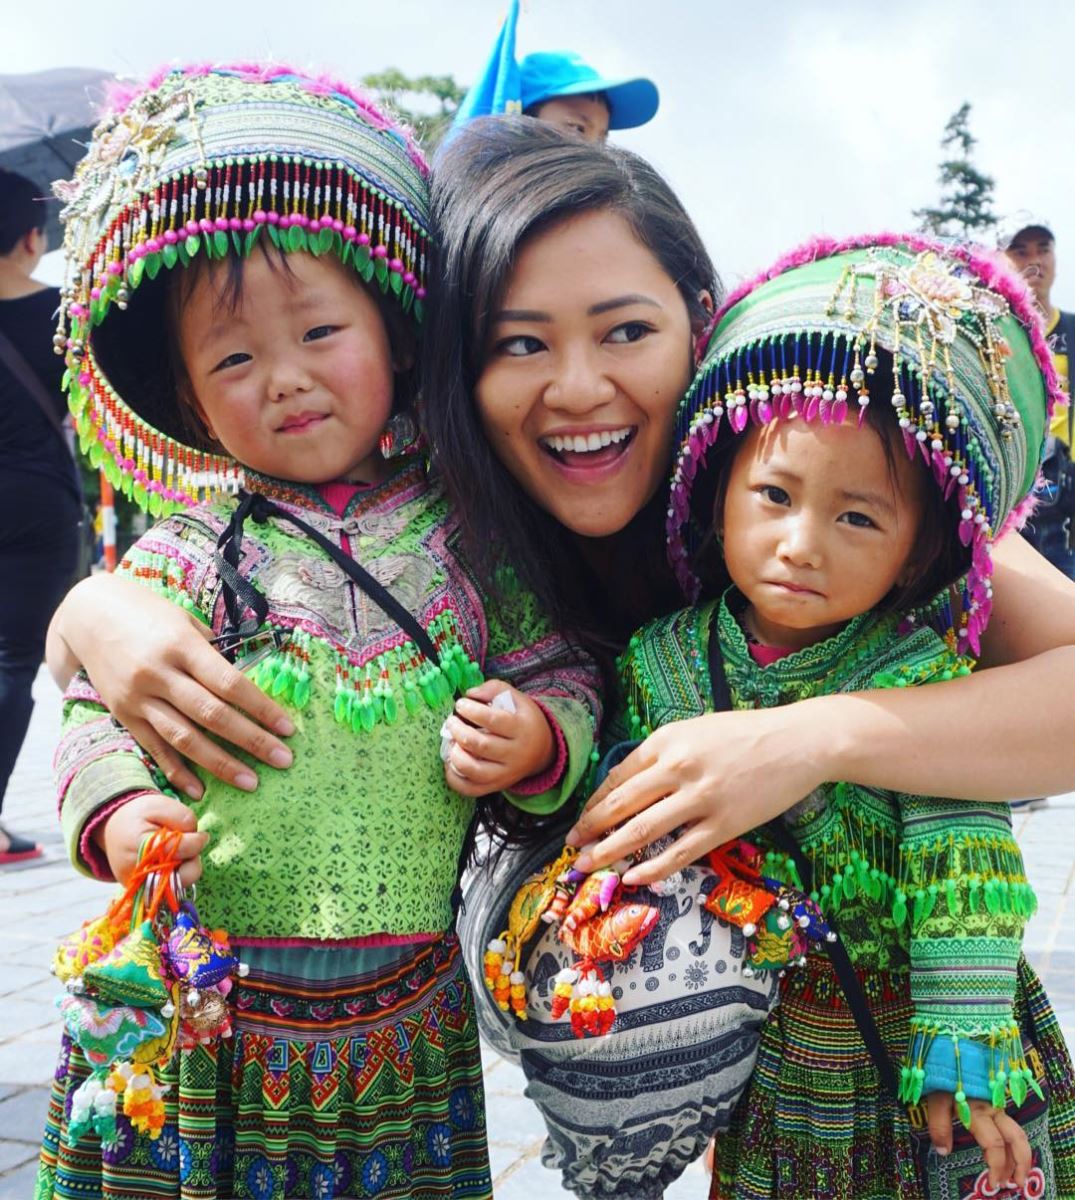 Tham gia các lễ hội truyền thống và khám phá văn hóa, bản sắc của người dân địa phương vào dịp Tết Nguyên Đán